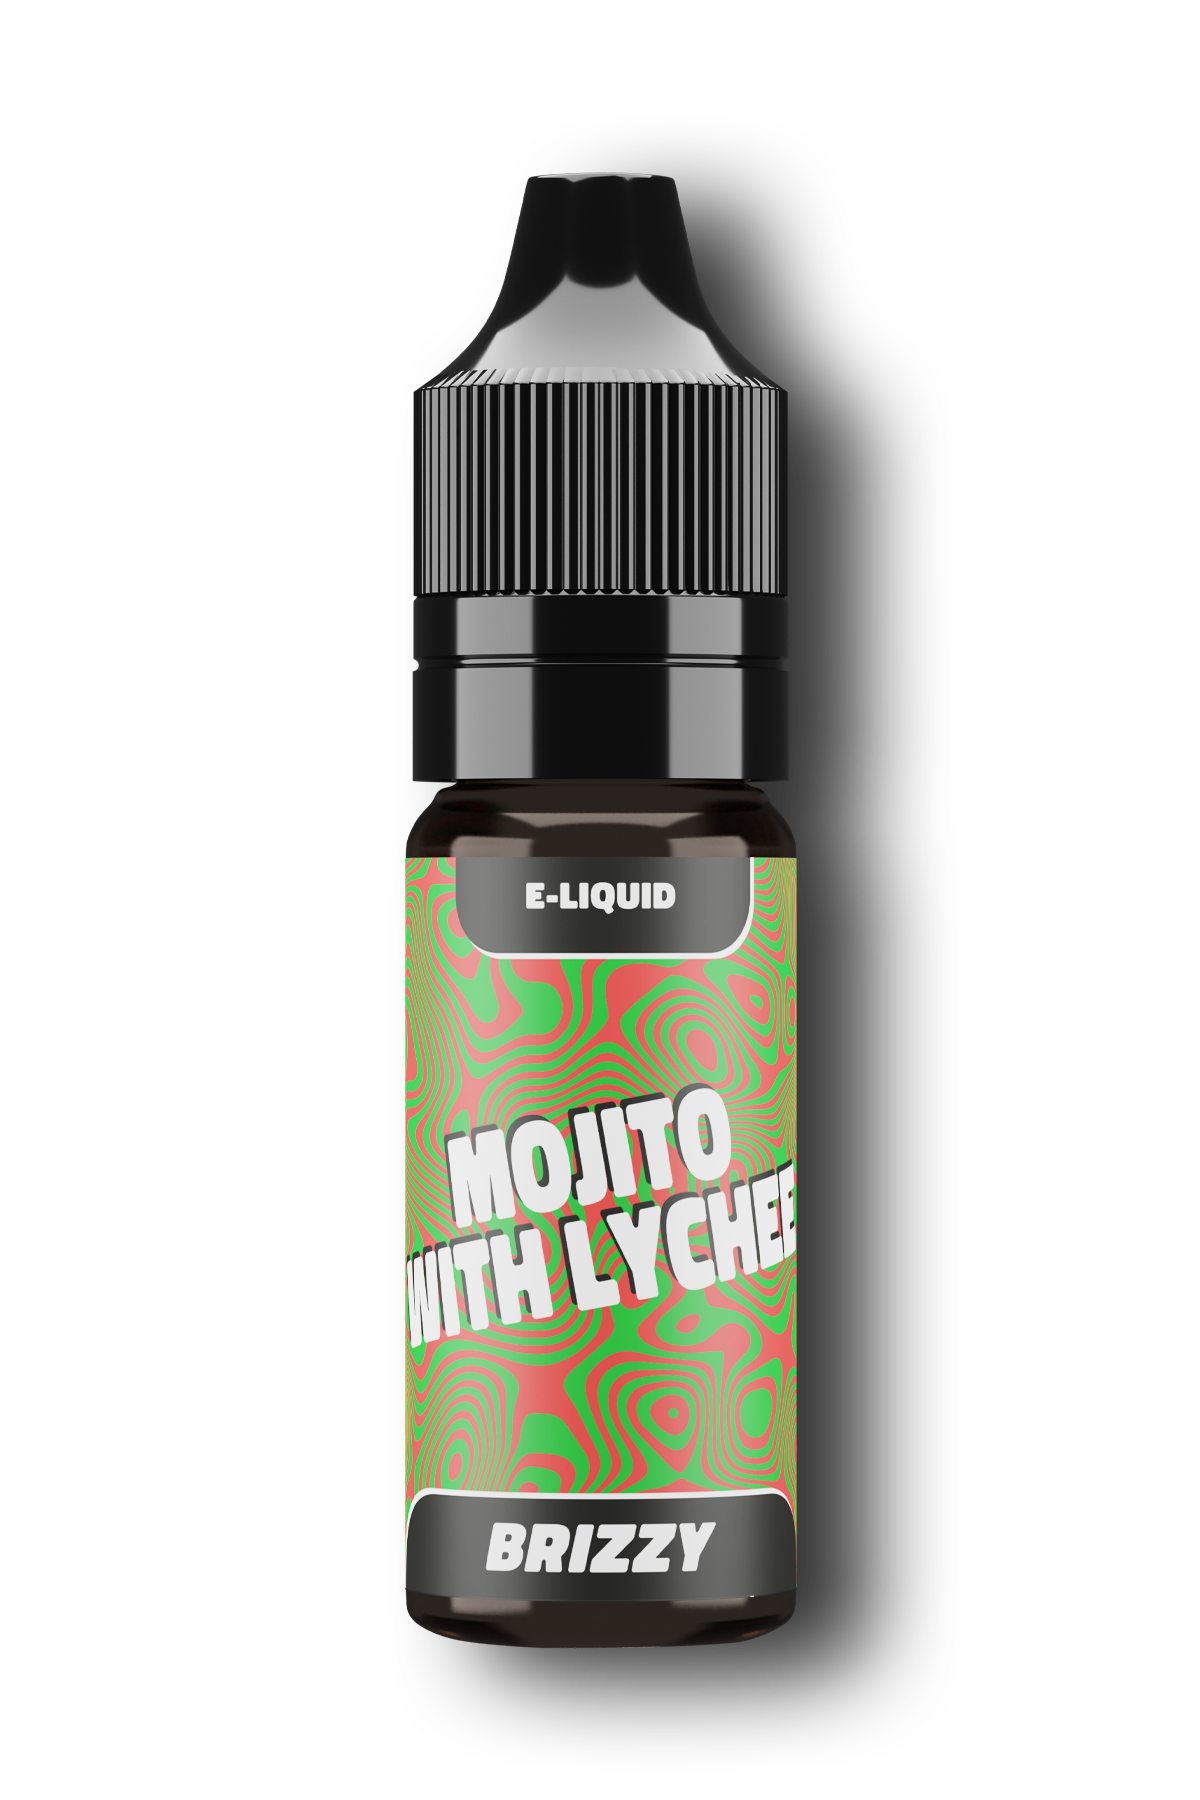 E-liquid - Brizzy Mojito with lychee 20mg/ml